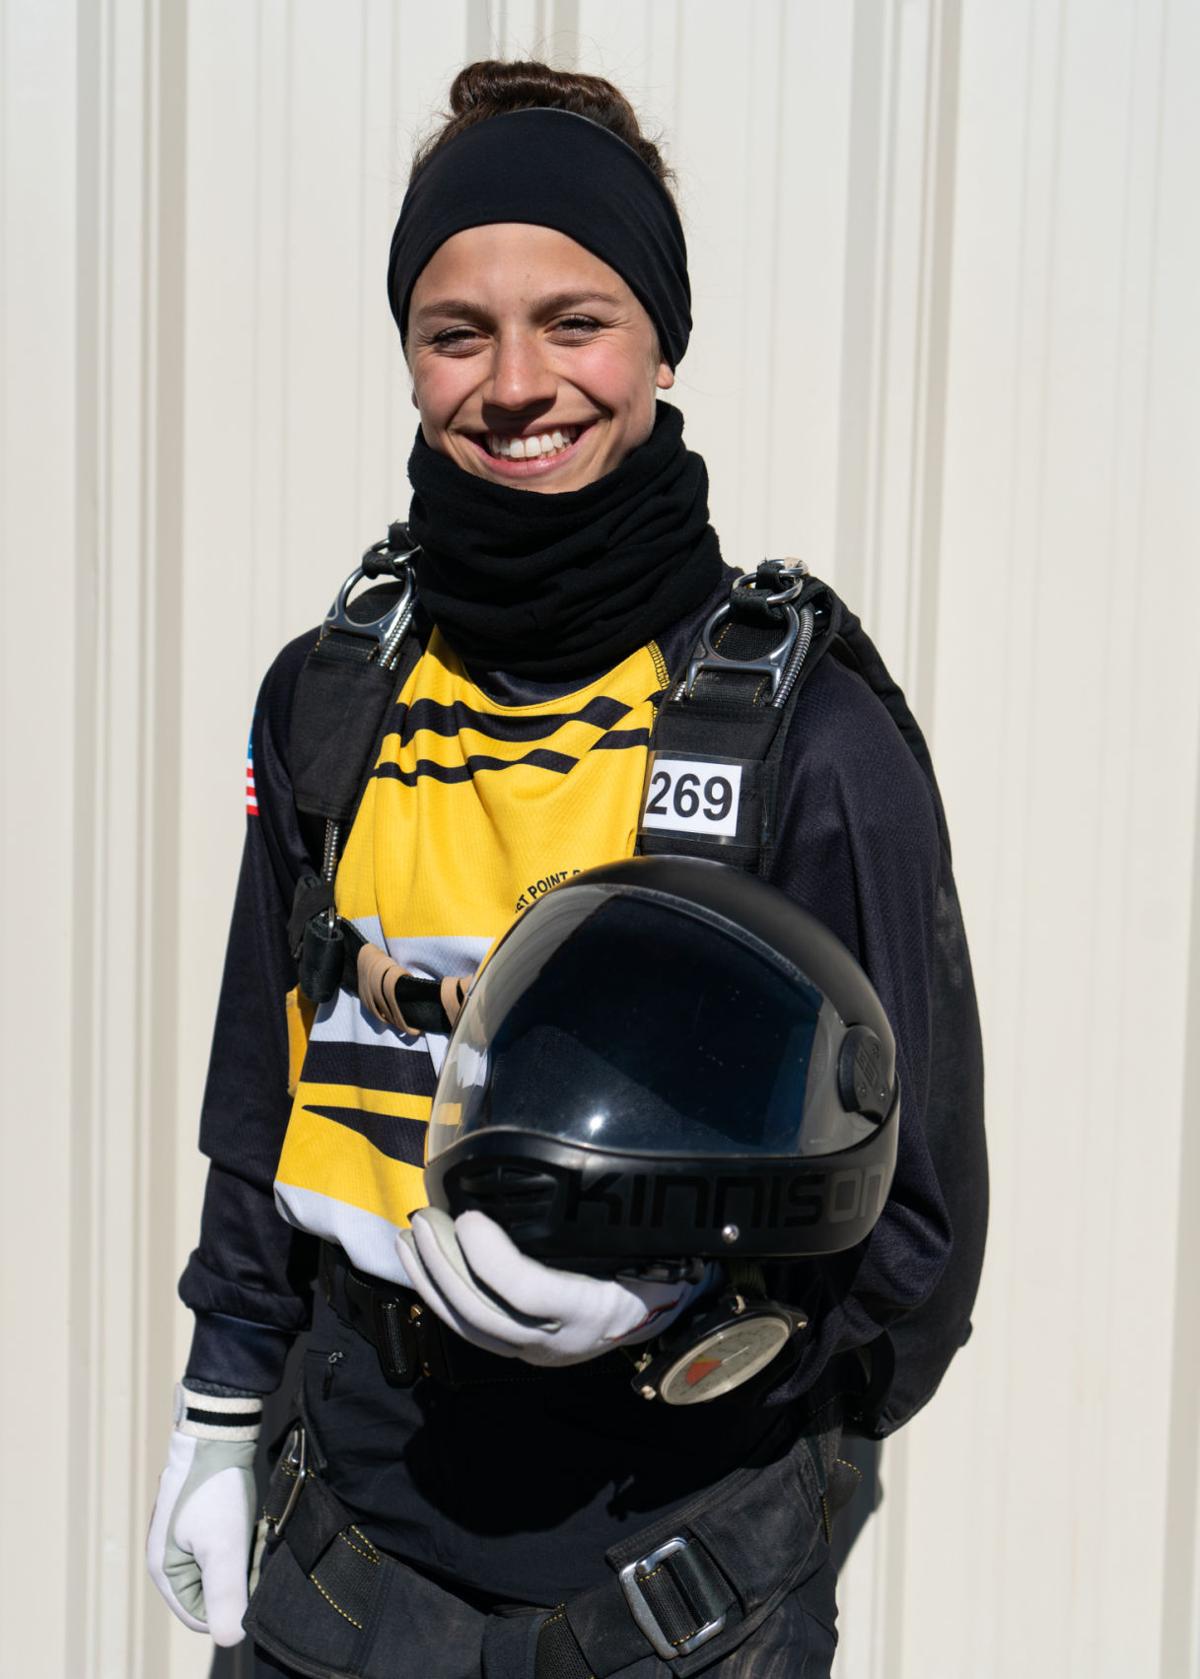 Tucson skydiver wins gold medal